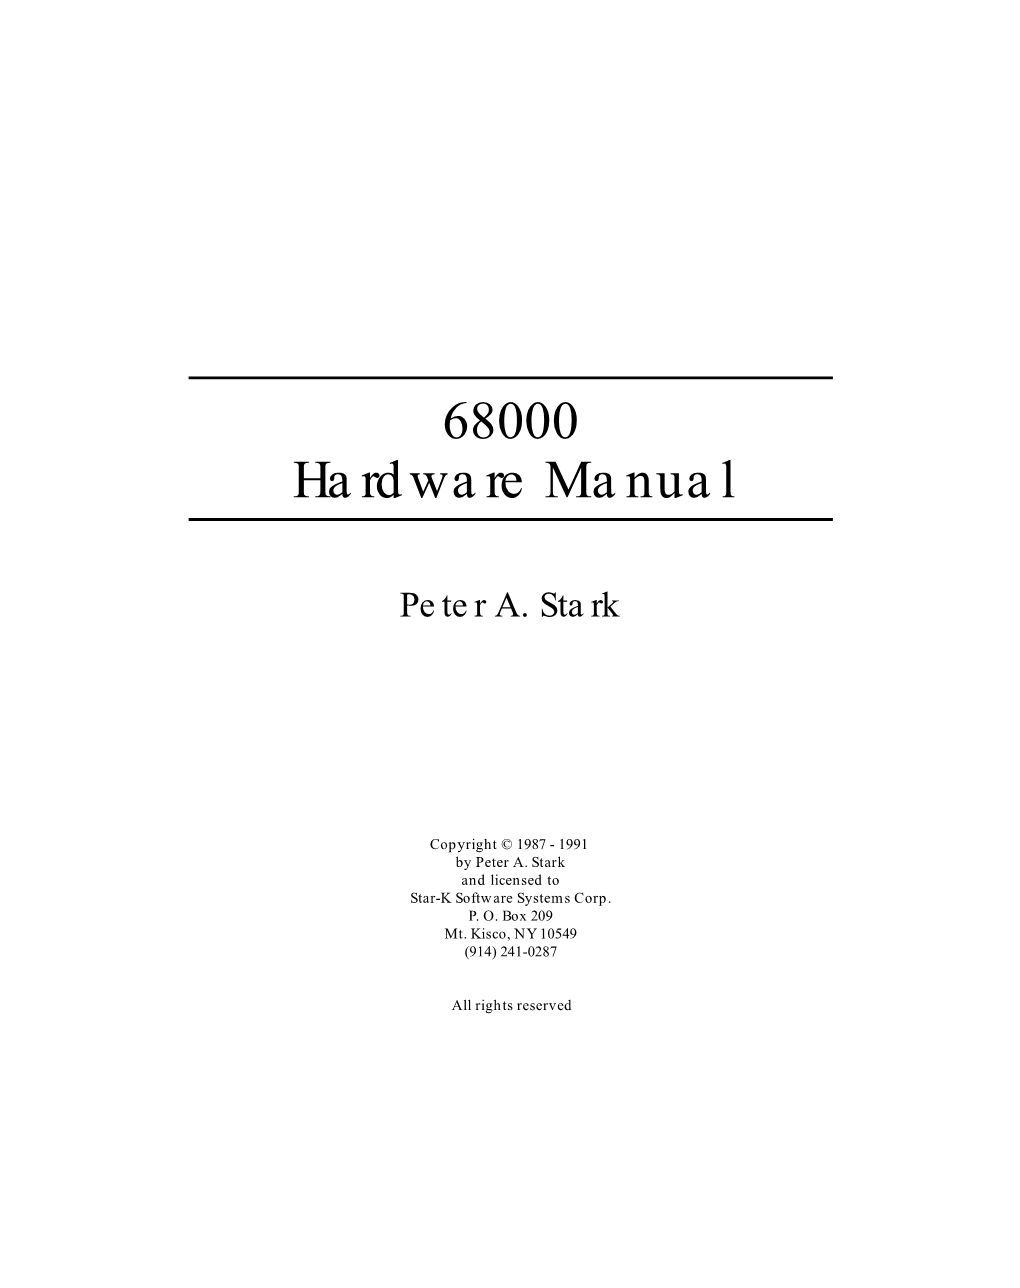 68000 Hardware Manual